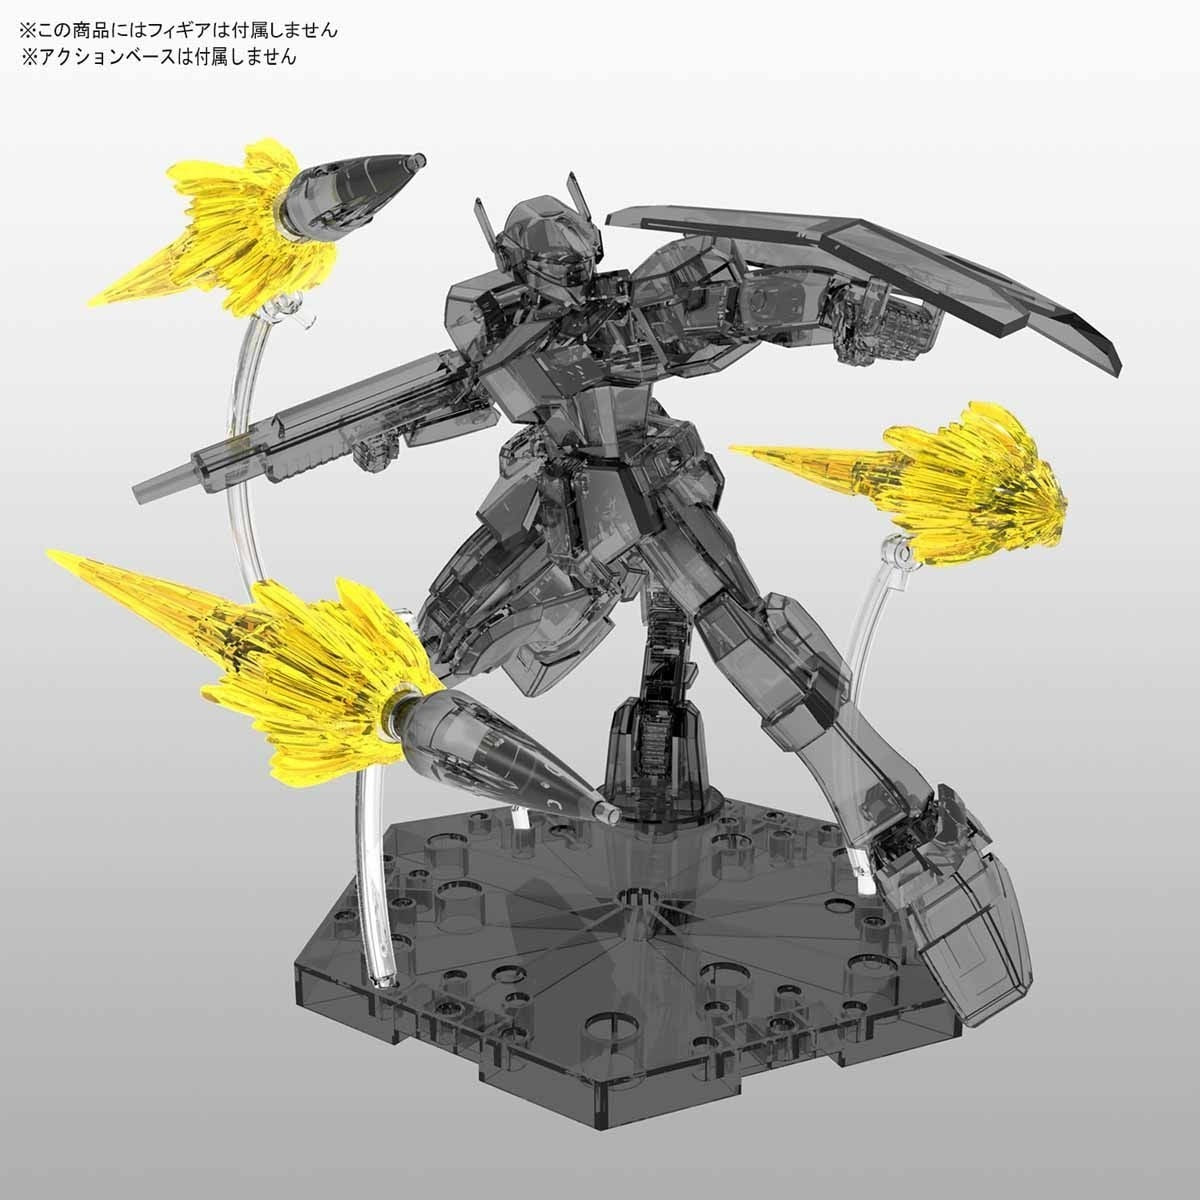 Efecto Jet de subida de figura (Kit de modelo Gundam *Piezas*) (Kit de modelo Gundam)